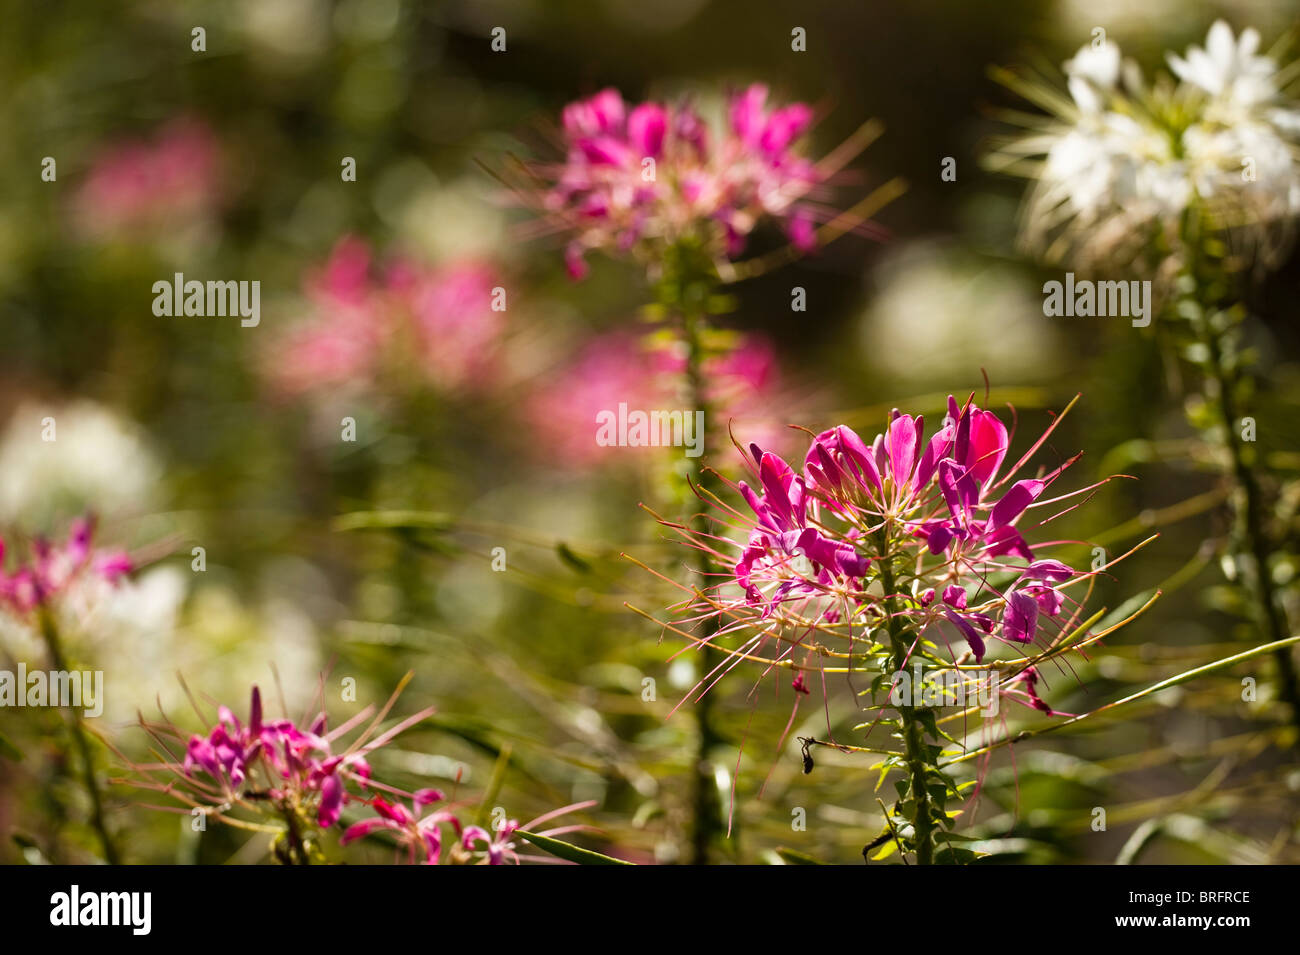 Spider Flower, Cleome hassleriana 'Pink Queen', in bloom Stock Photo